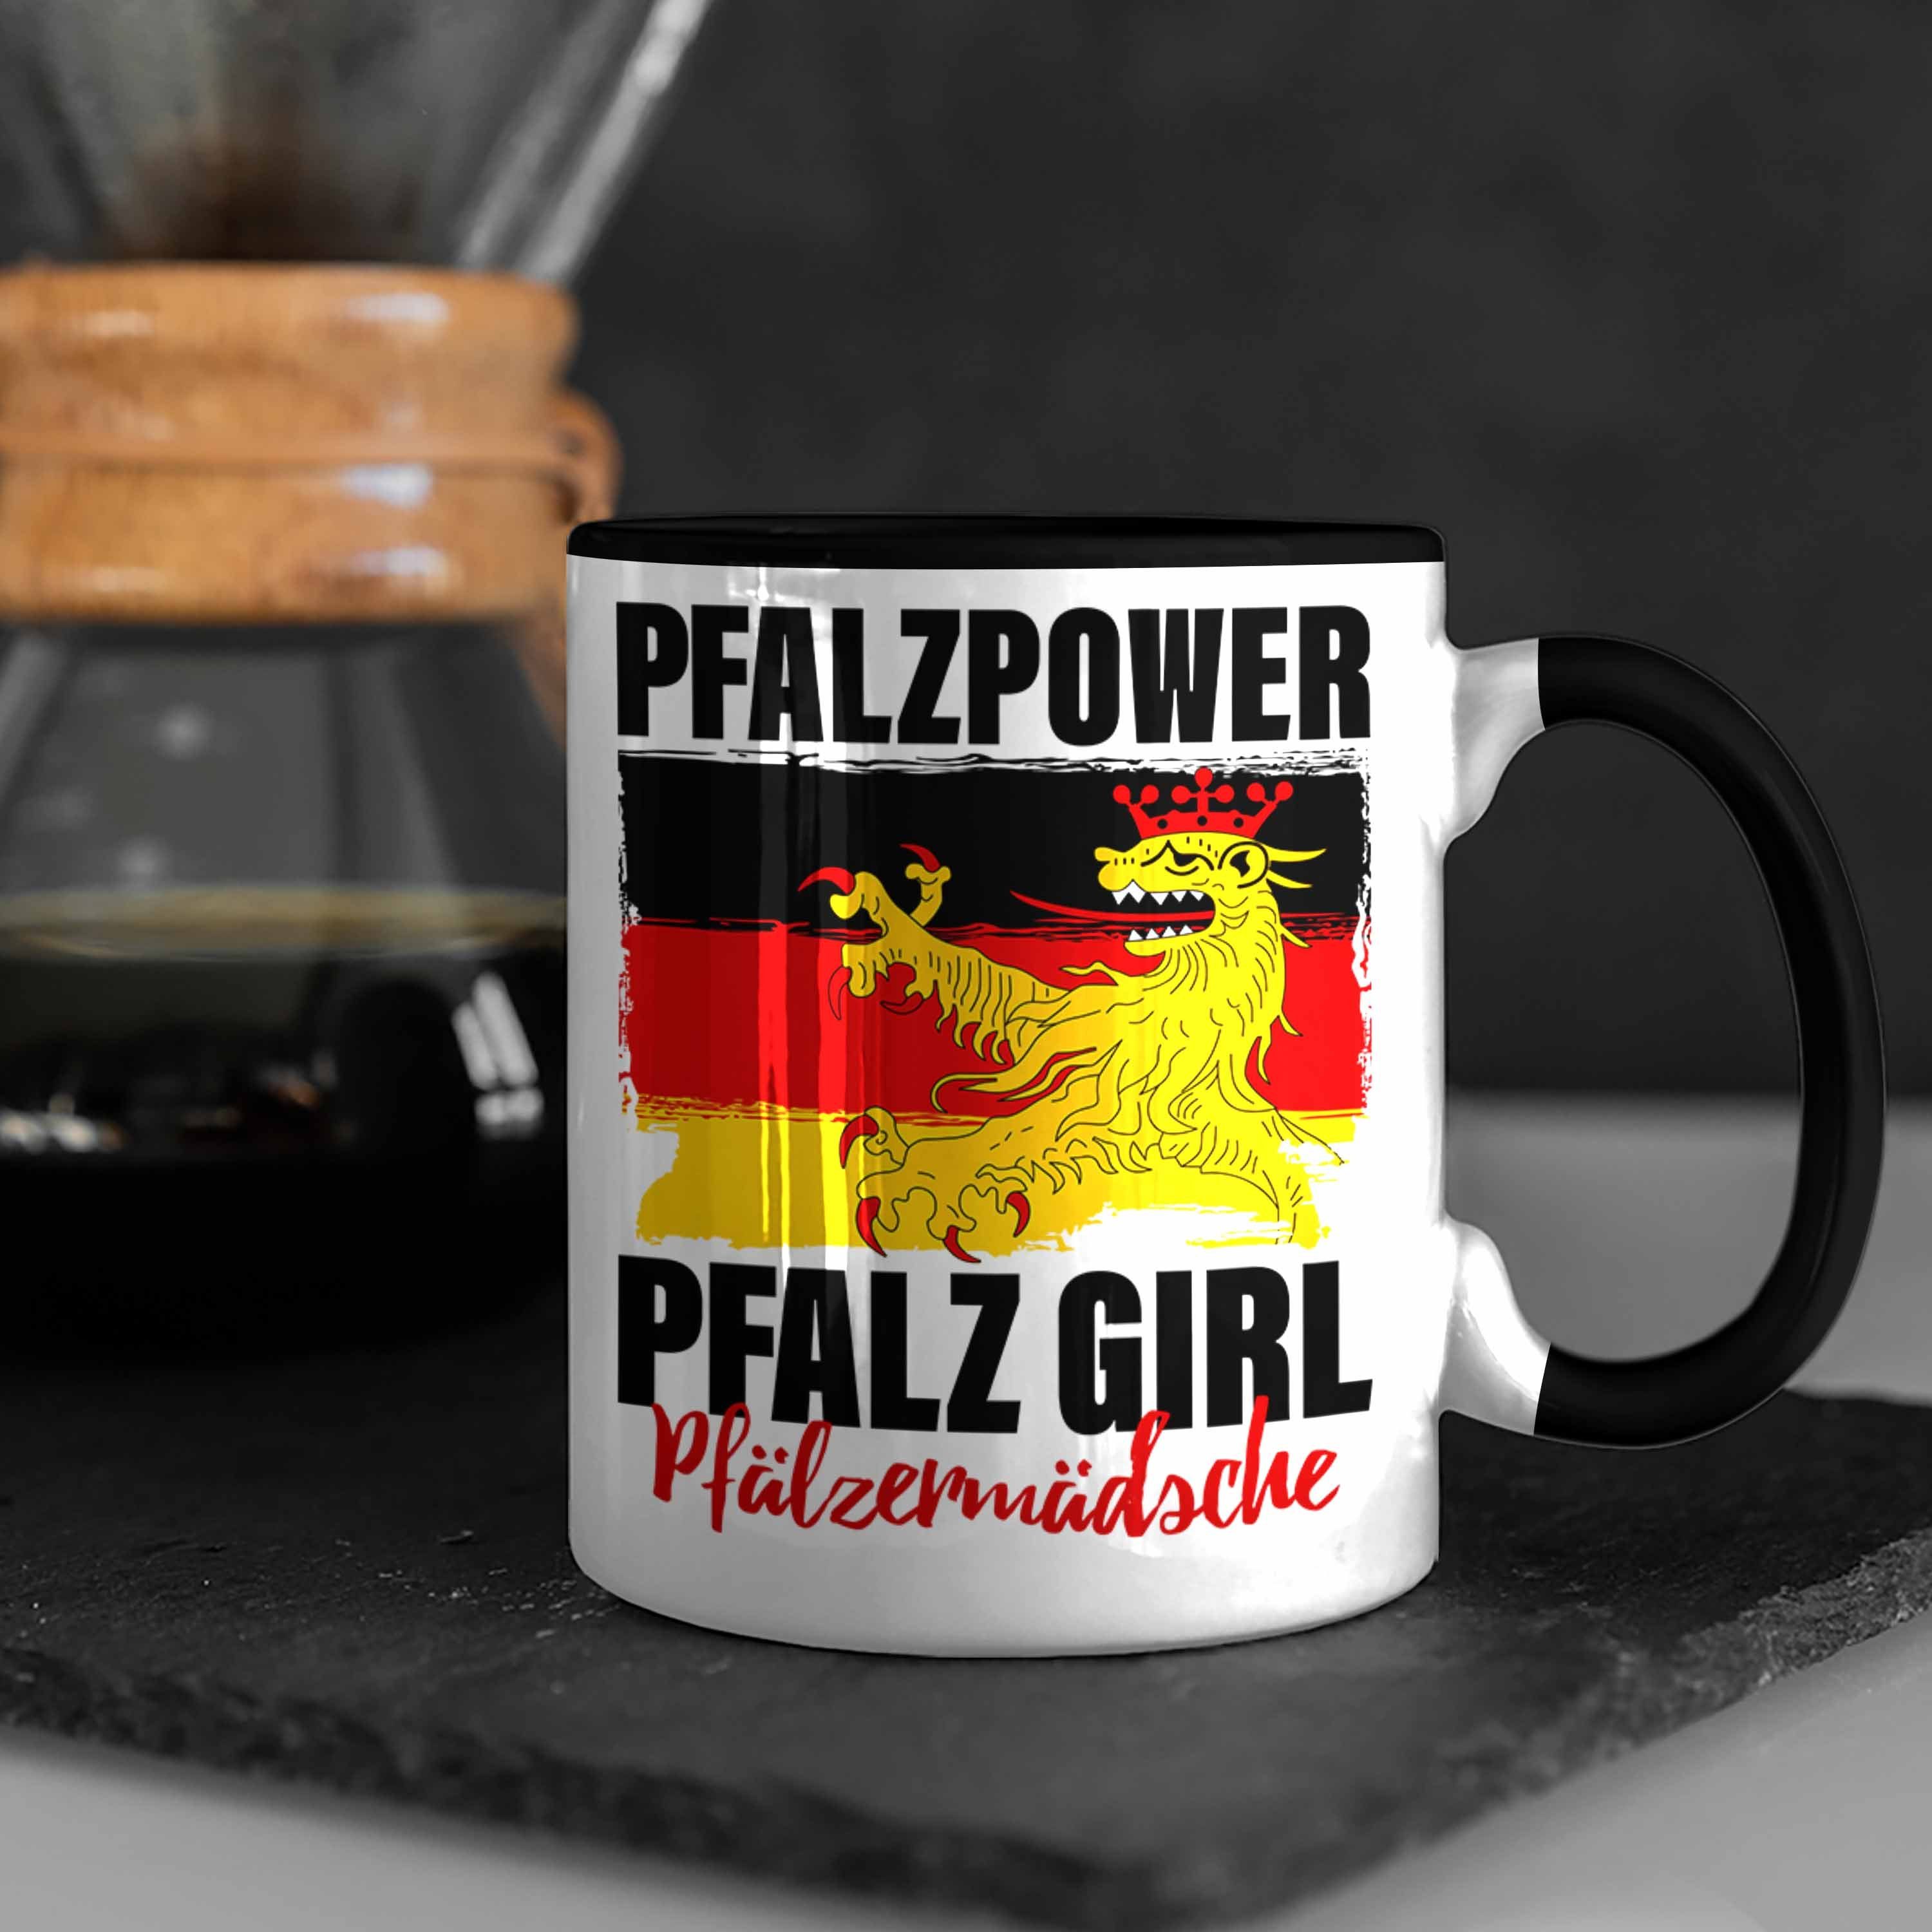 Trendation Tasse Girl Pfalz Geschenk Pfalzmädsche Pfalzpower Schwarz Tasse Frauen